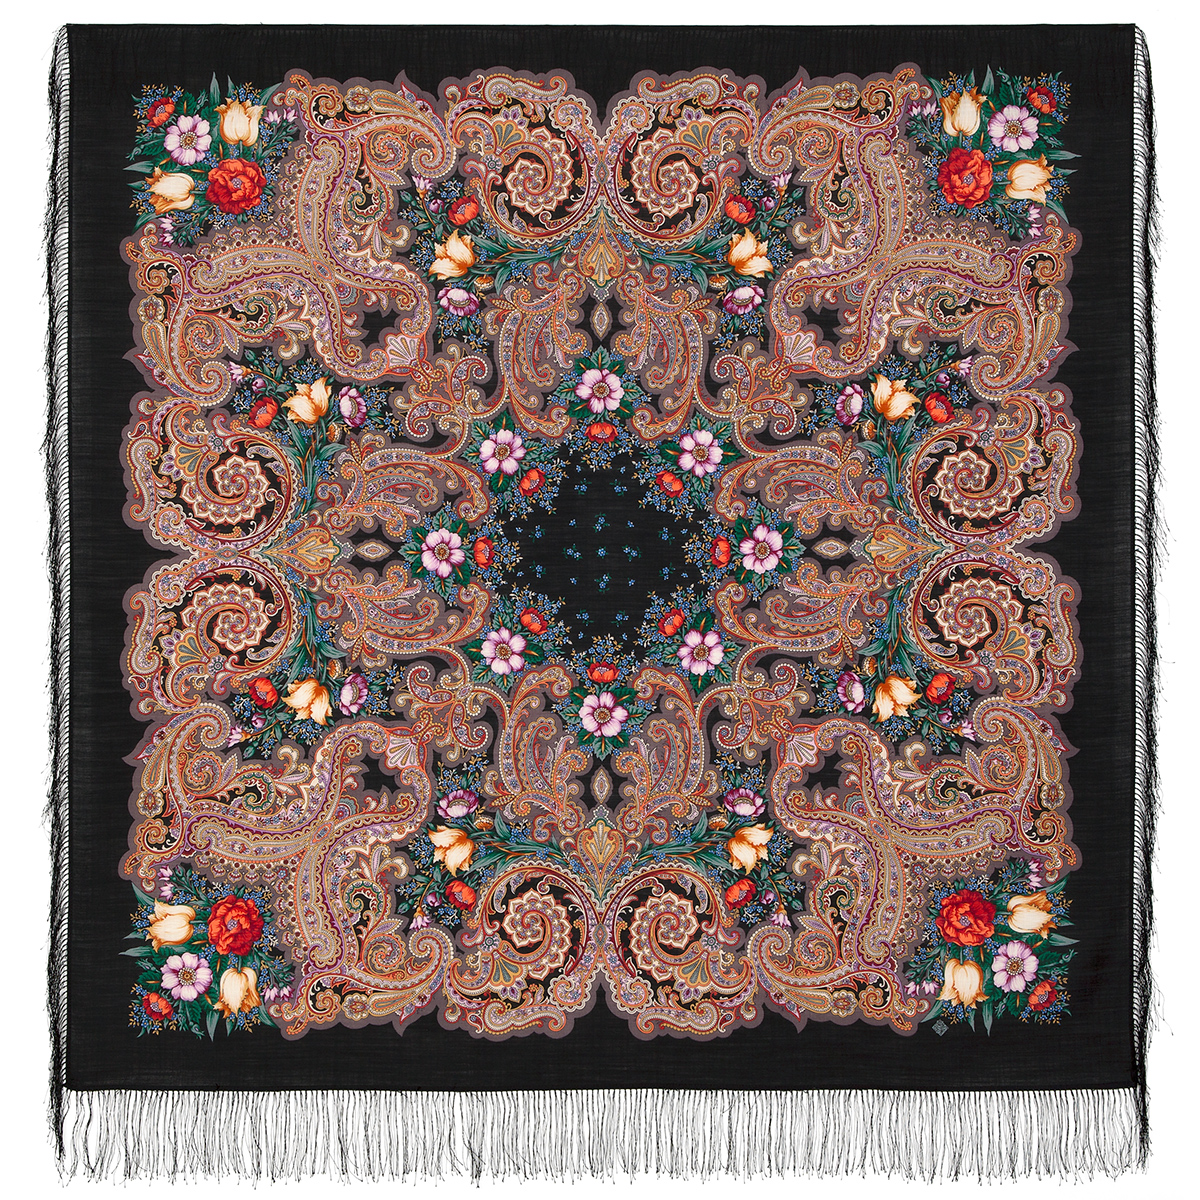 Платок женский Павловопосадский платок 1885 черный/коричневый/зеленый/красный, 146х146 см